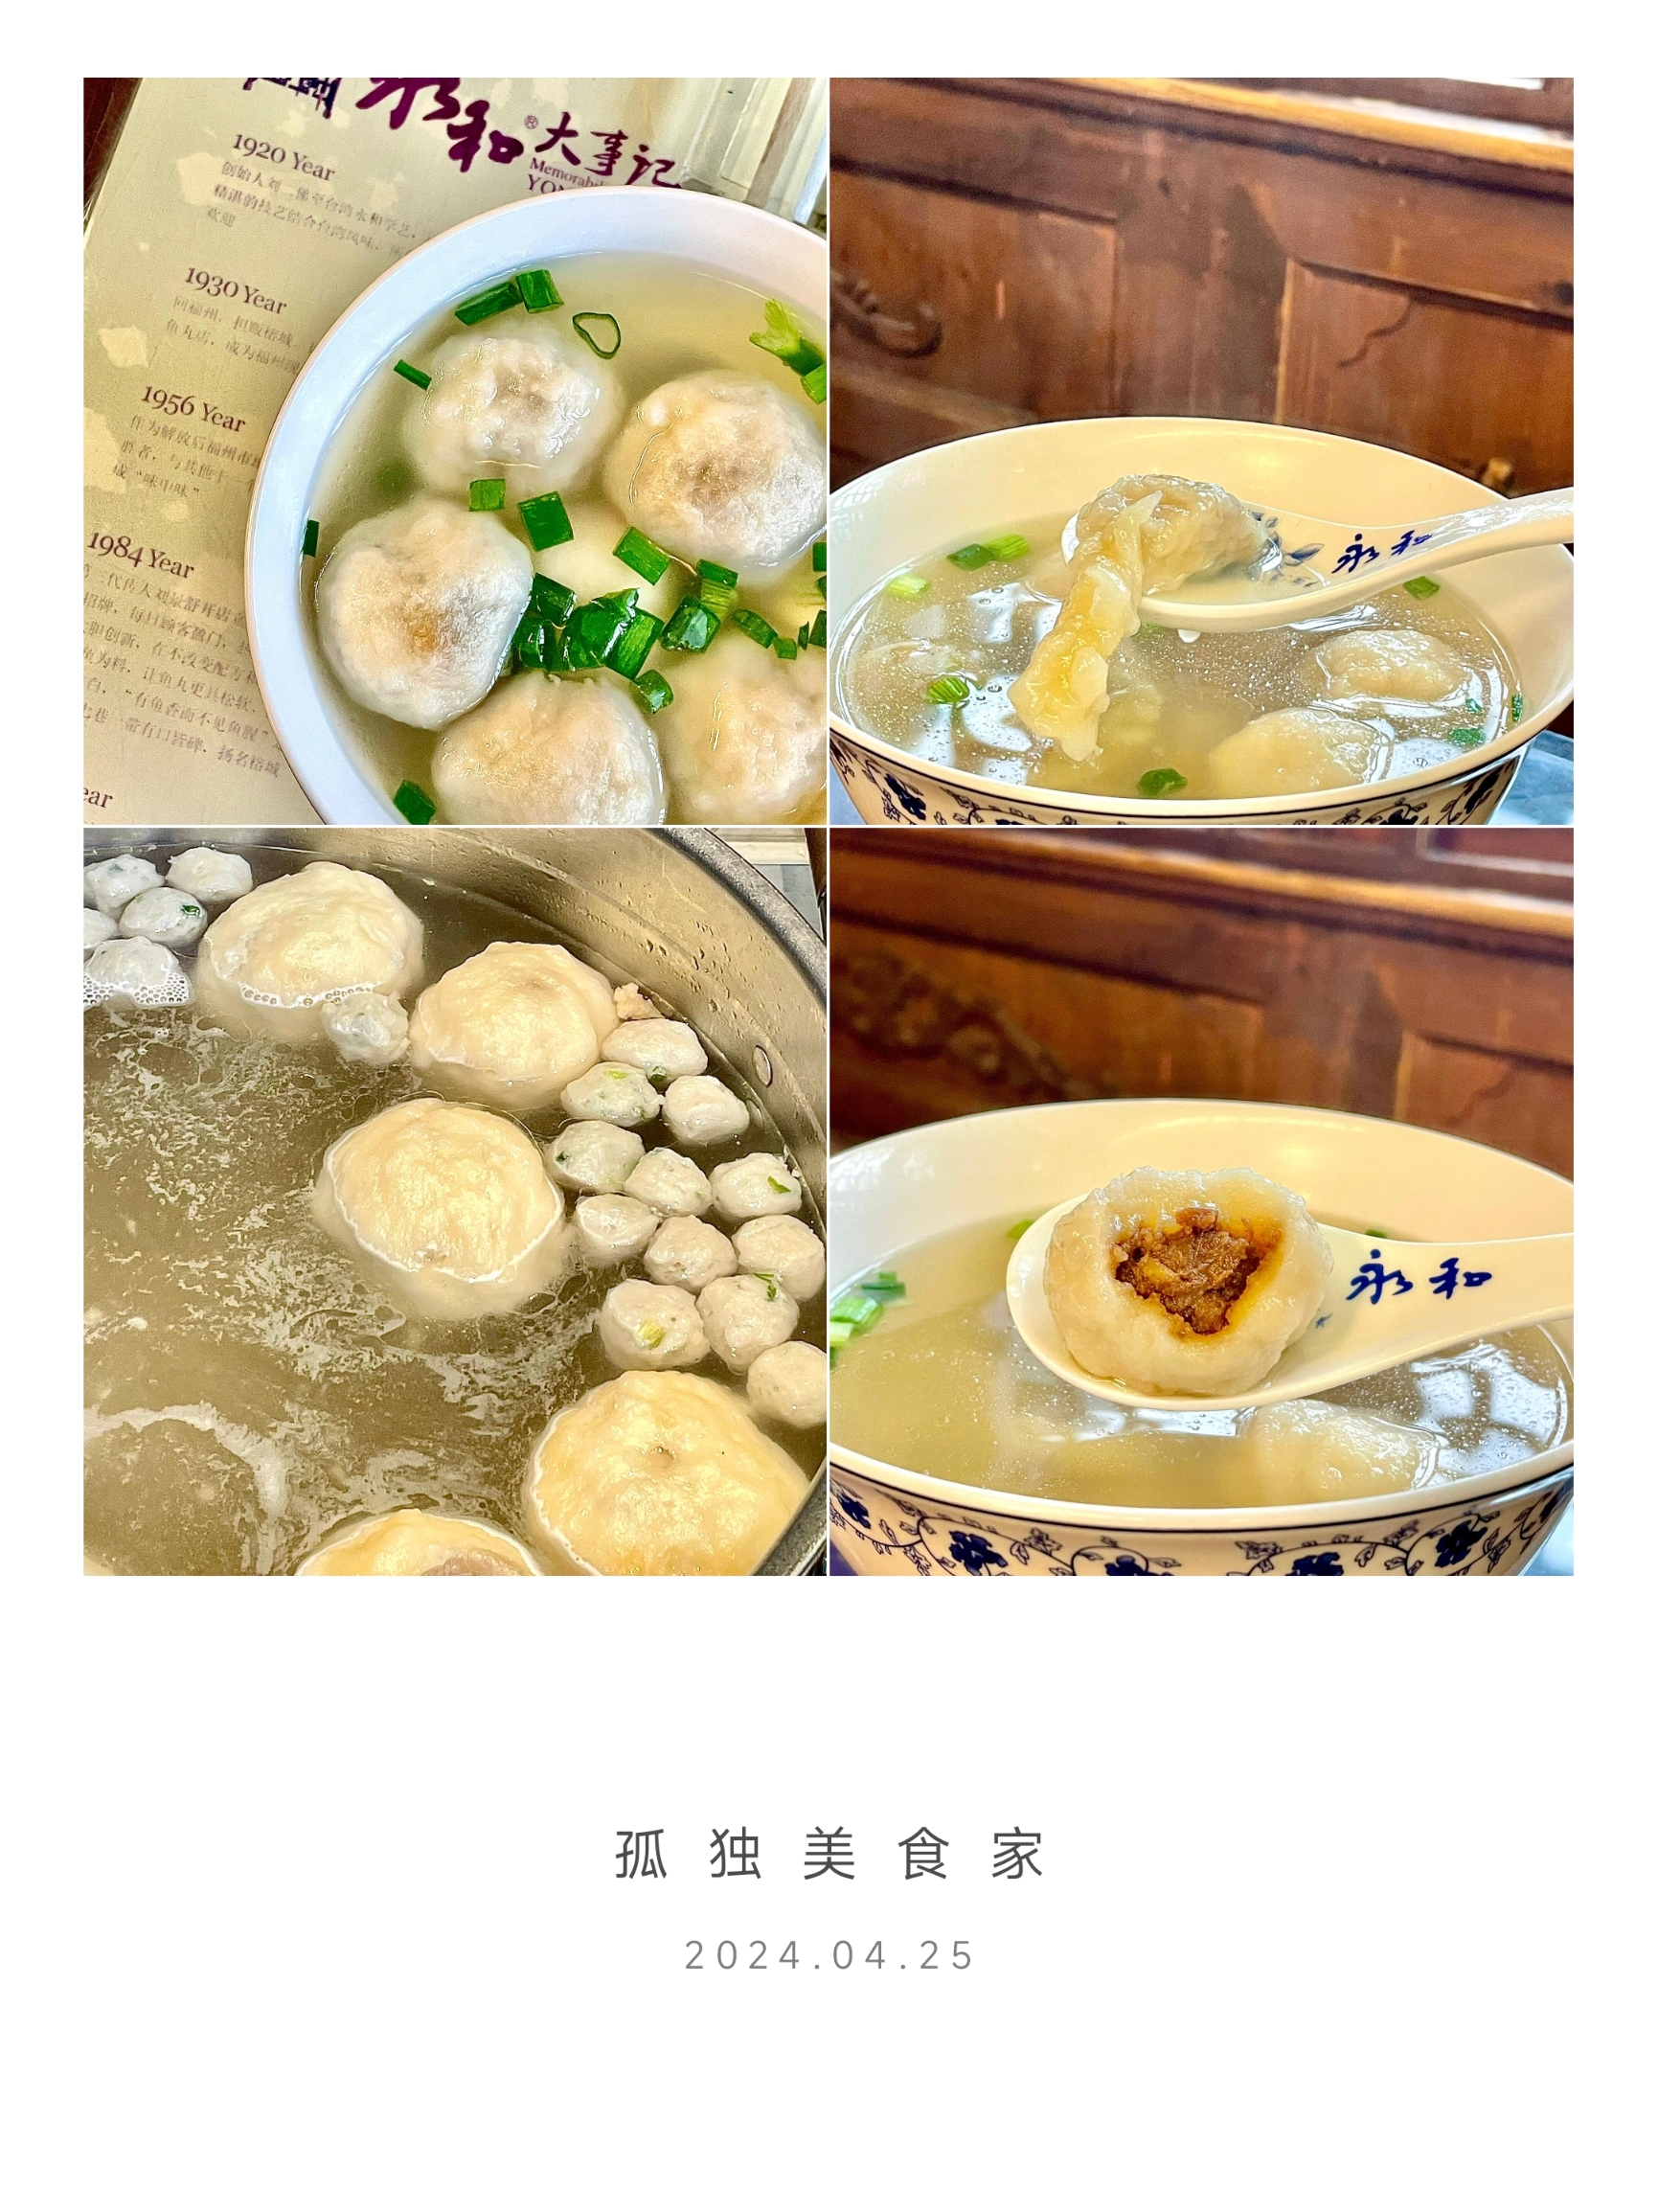 福州永和鱼丸：不仅仅是火锅丸子，更是一场味蕾的盛宴！